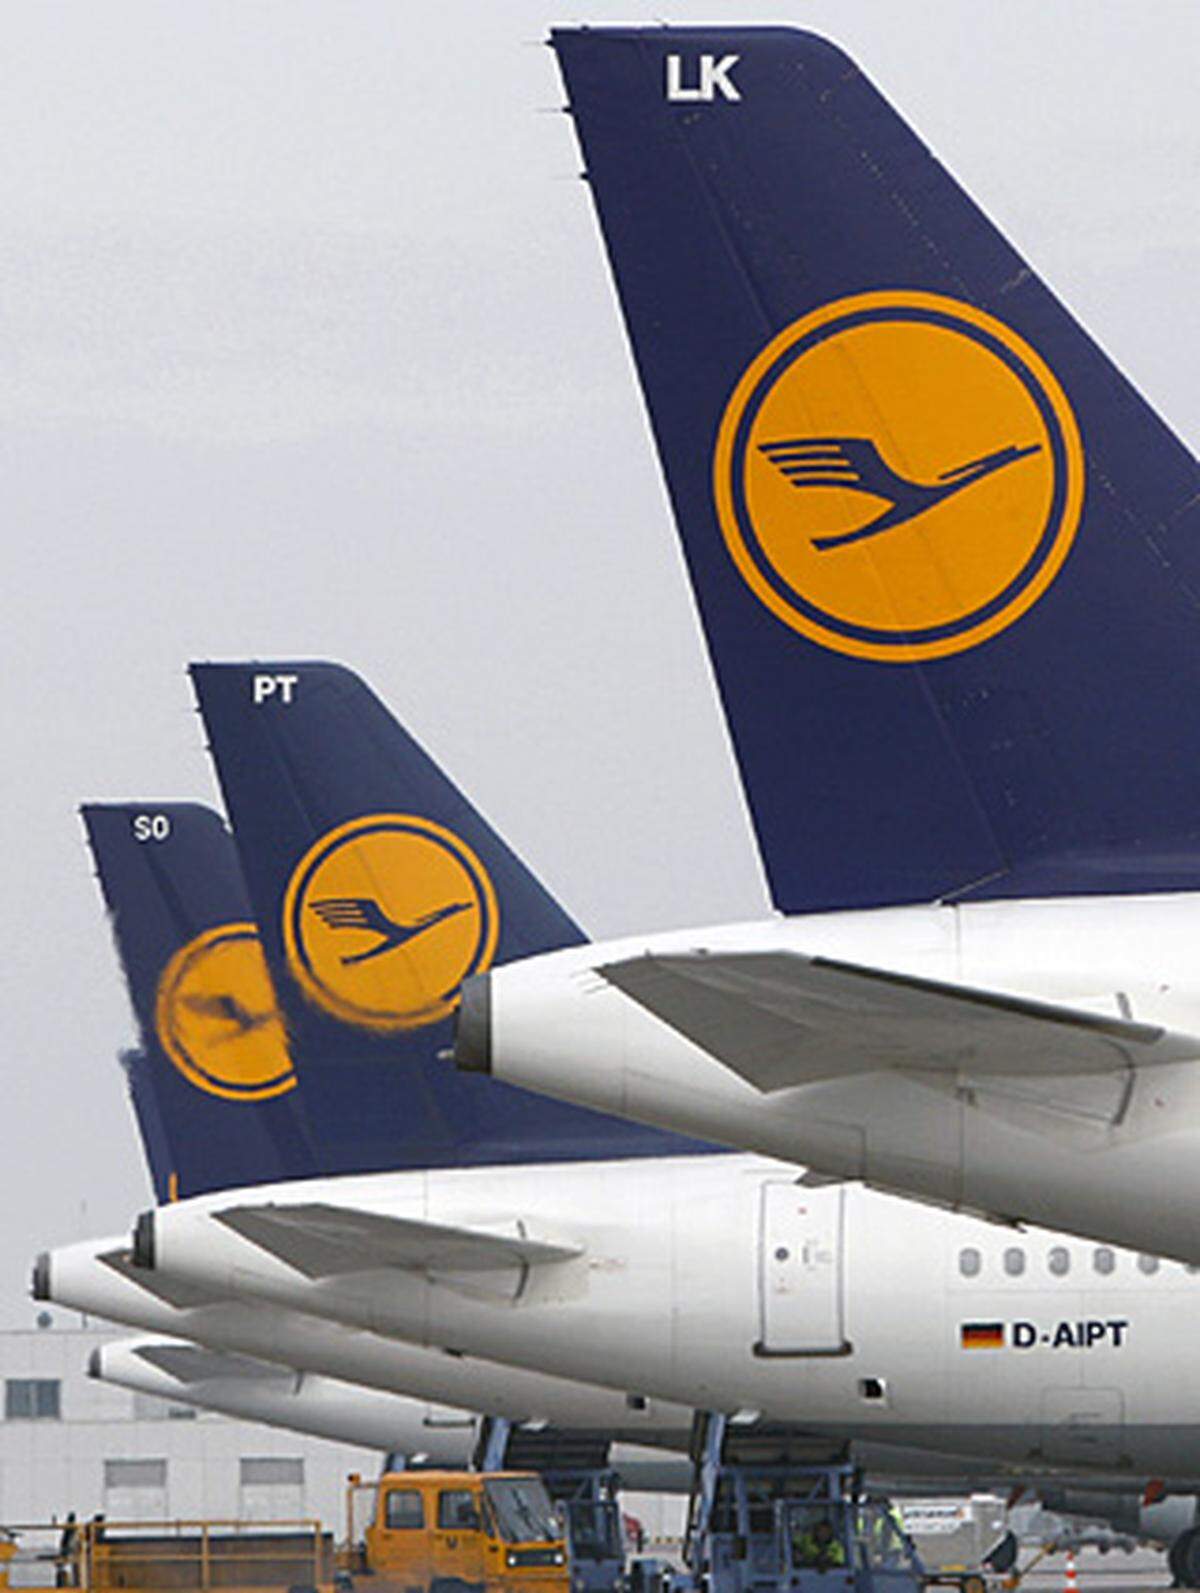 Die Deutsche Lufthansa nimmt in der Sicherheits-Rangliste Platz 19 mit der Sicherheitsrate 0,005 ein. Dass sie nicht besser platziert ist, ist auf einen Unfall am 14. September 1993 in Warschau zurückzuführen. Dabei war ein Airbus A320 auf regennasser Landebahn unter sehr schwierigen Umständen verunglückt. Unter den beiden Todesopfern befand sich auch der A320-Chefpilot der Lufthansa, einer der erfahrensten europäischen Flugkapitäne. Seitdem hatte auch die Lufthansa keinen schweren Unfall mehr.